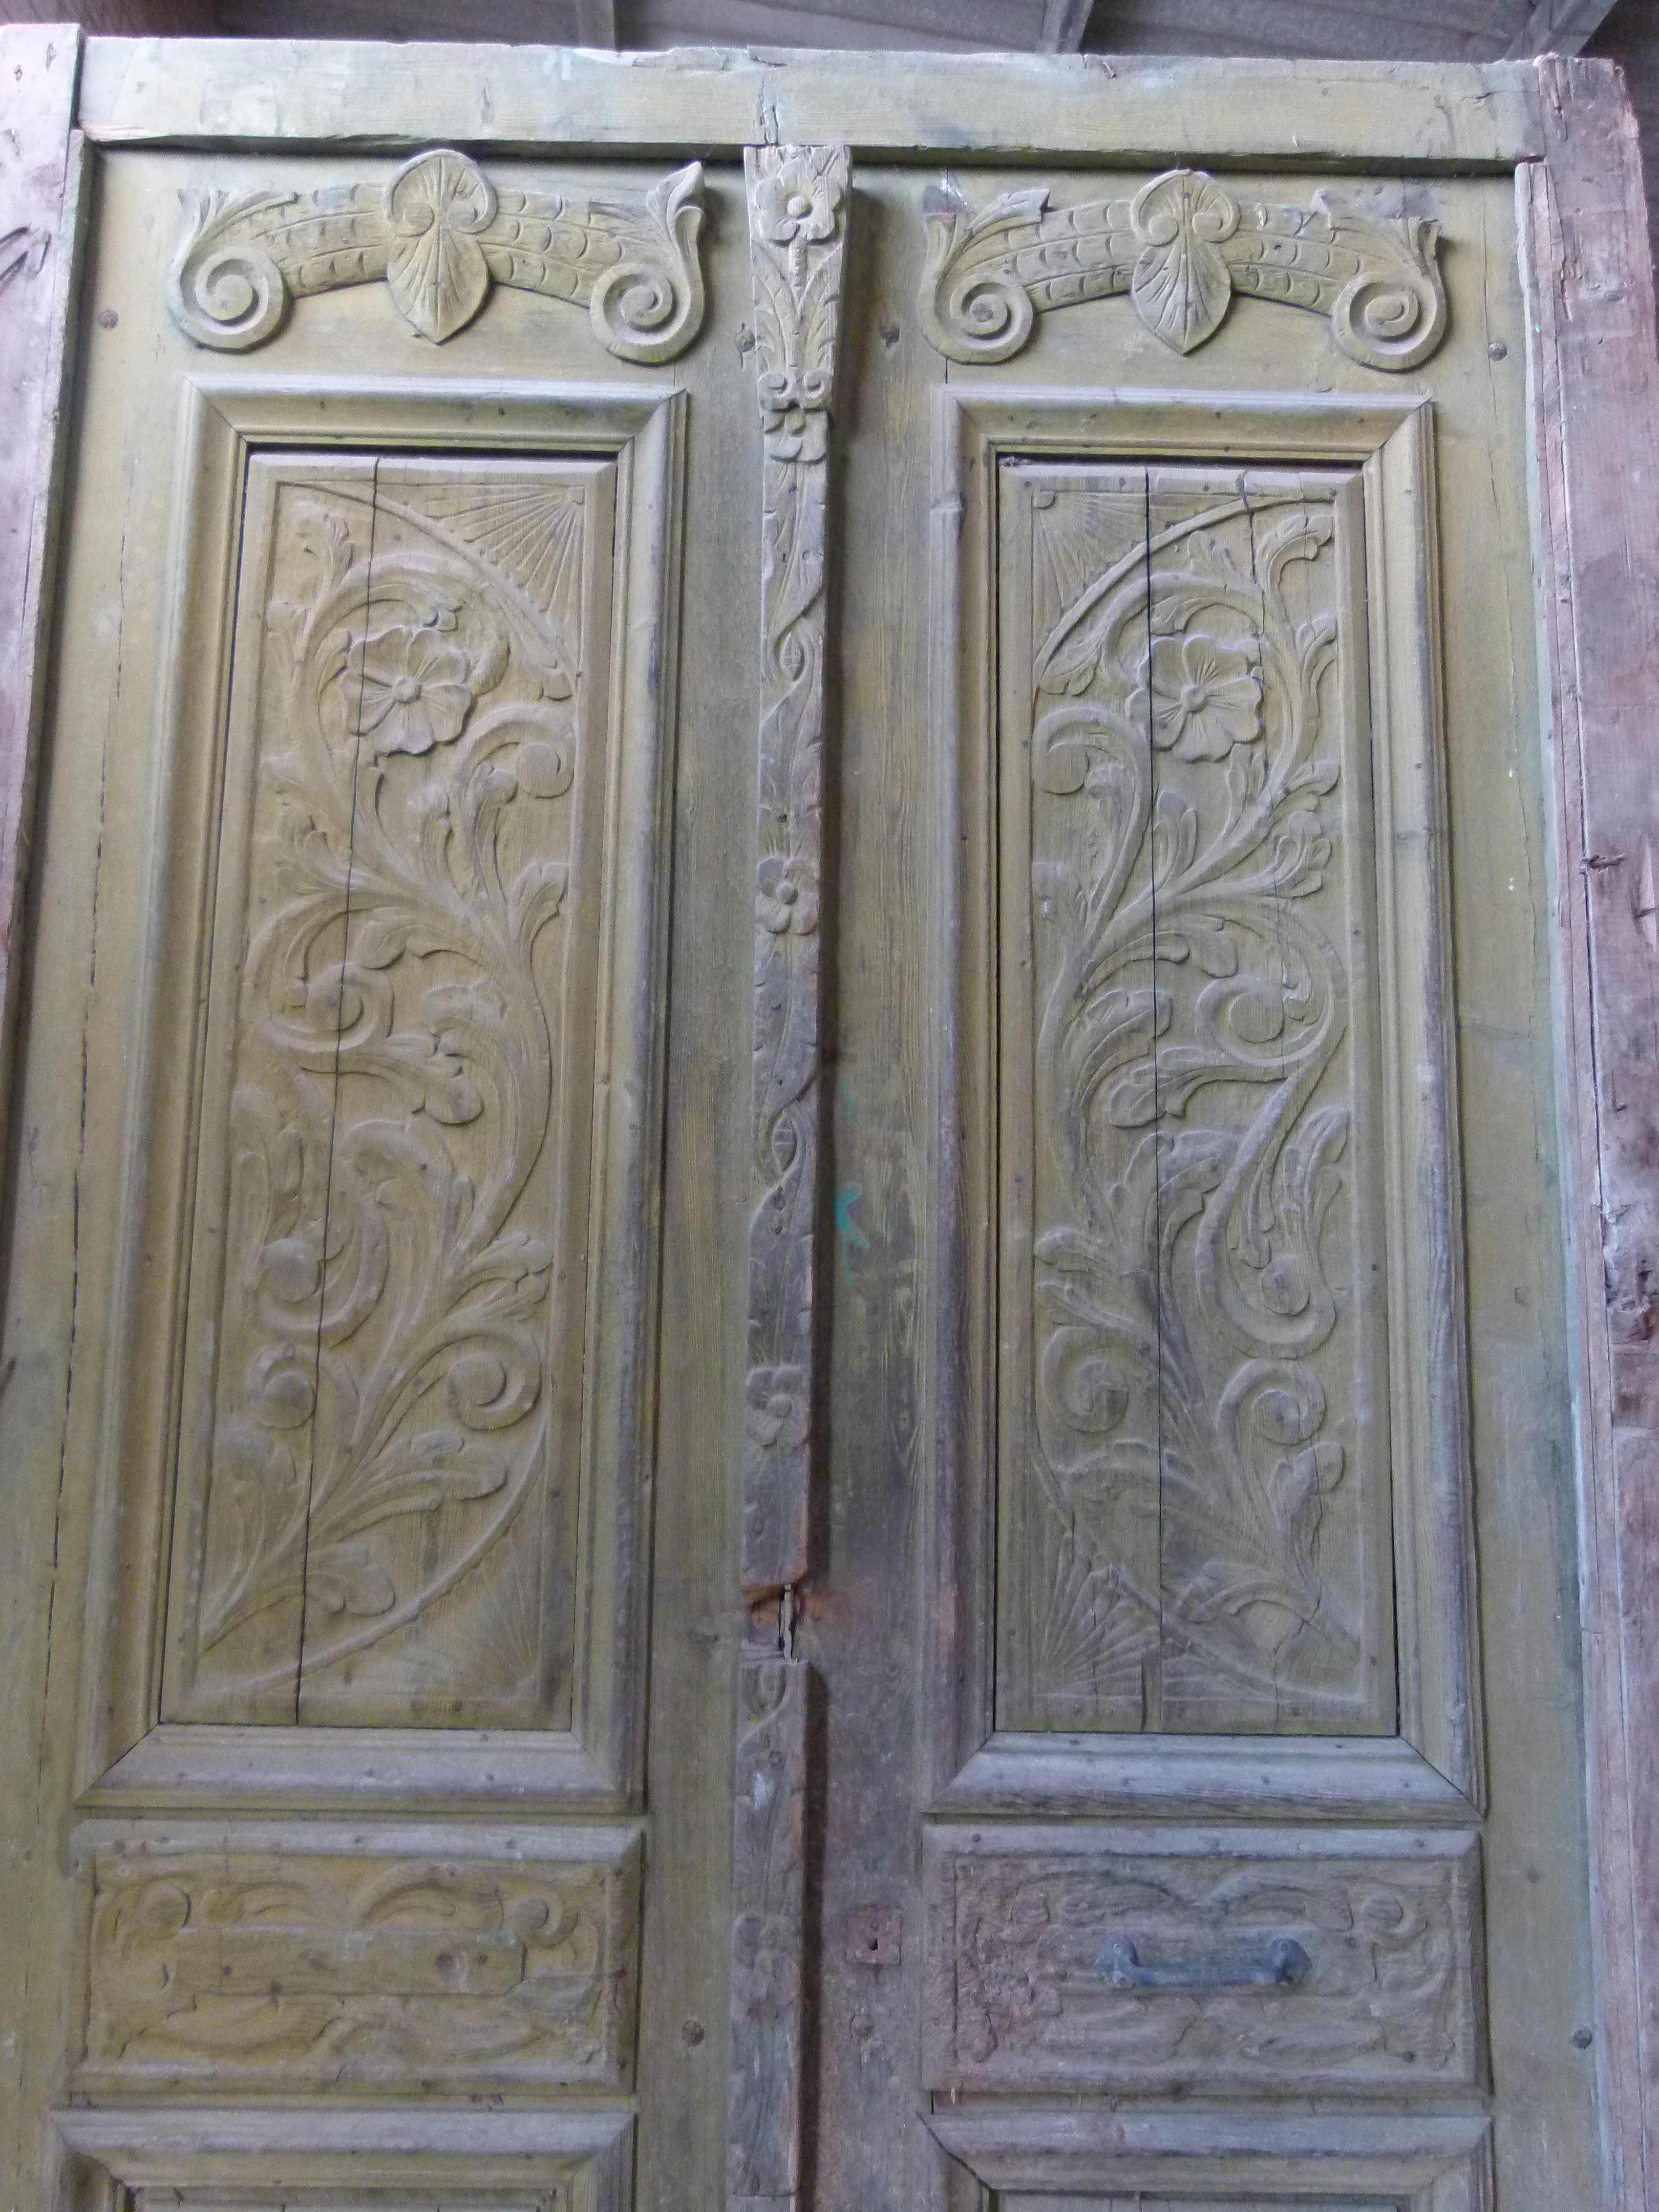 porte d'entrée double du 19ème siècle, patinée, de style Art Nouveau, de Catalogne, Espagne.
 Bois sculpté de cette période.
La porte est encadrée et fonctionne mais nécessite une restauration car certaines parties sont endommagées.
La patine